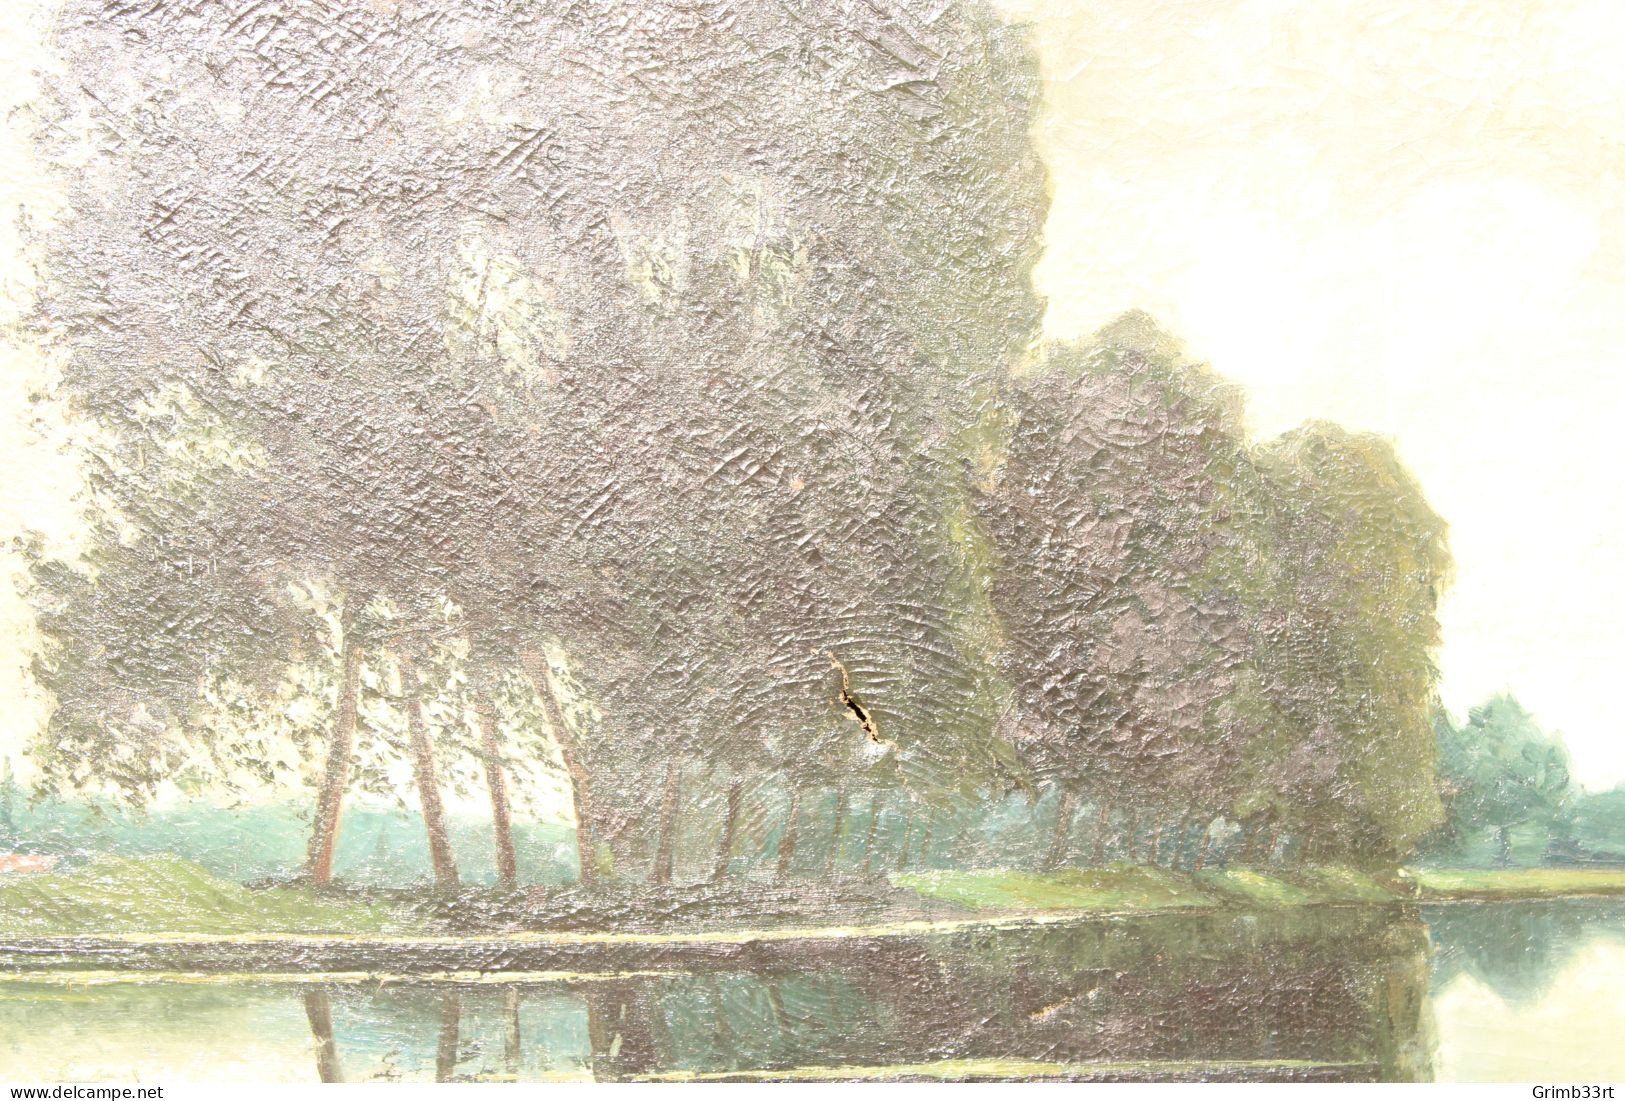 Gaston DE BIEMME (XIX-XX) - Au bord du canal - Olie op doek - 104 x 143 cm